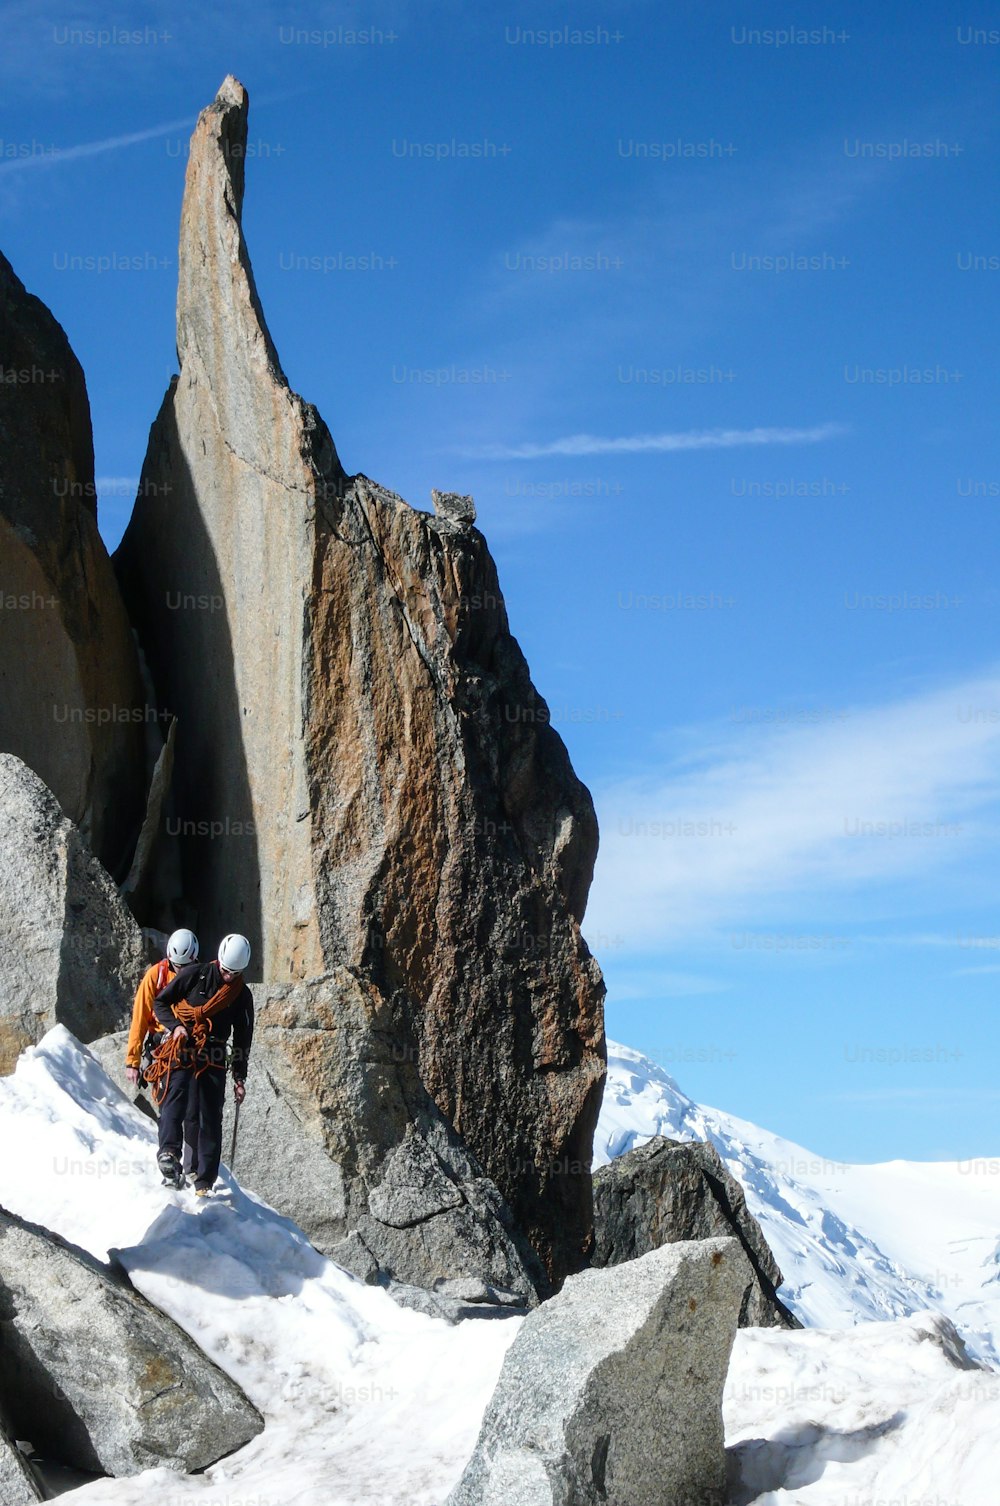 guide de montagne et un client masculin sur une crête rocheuse se dirigeant vers un haut sommet des Alpes françaises près de Chamonix par une belle journ�ée d’été